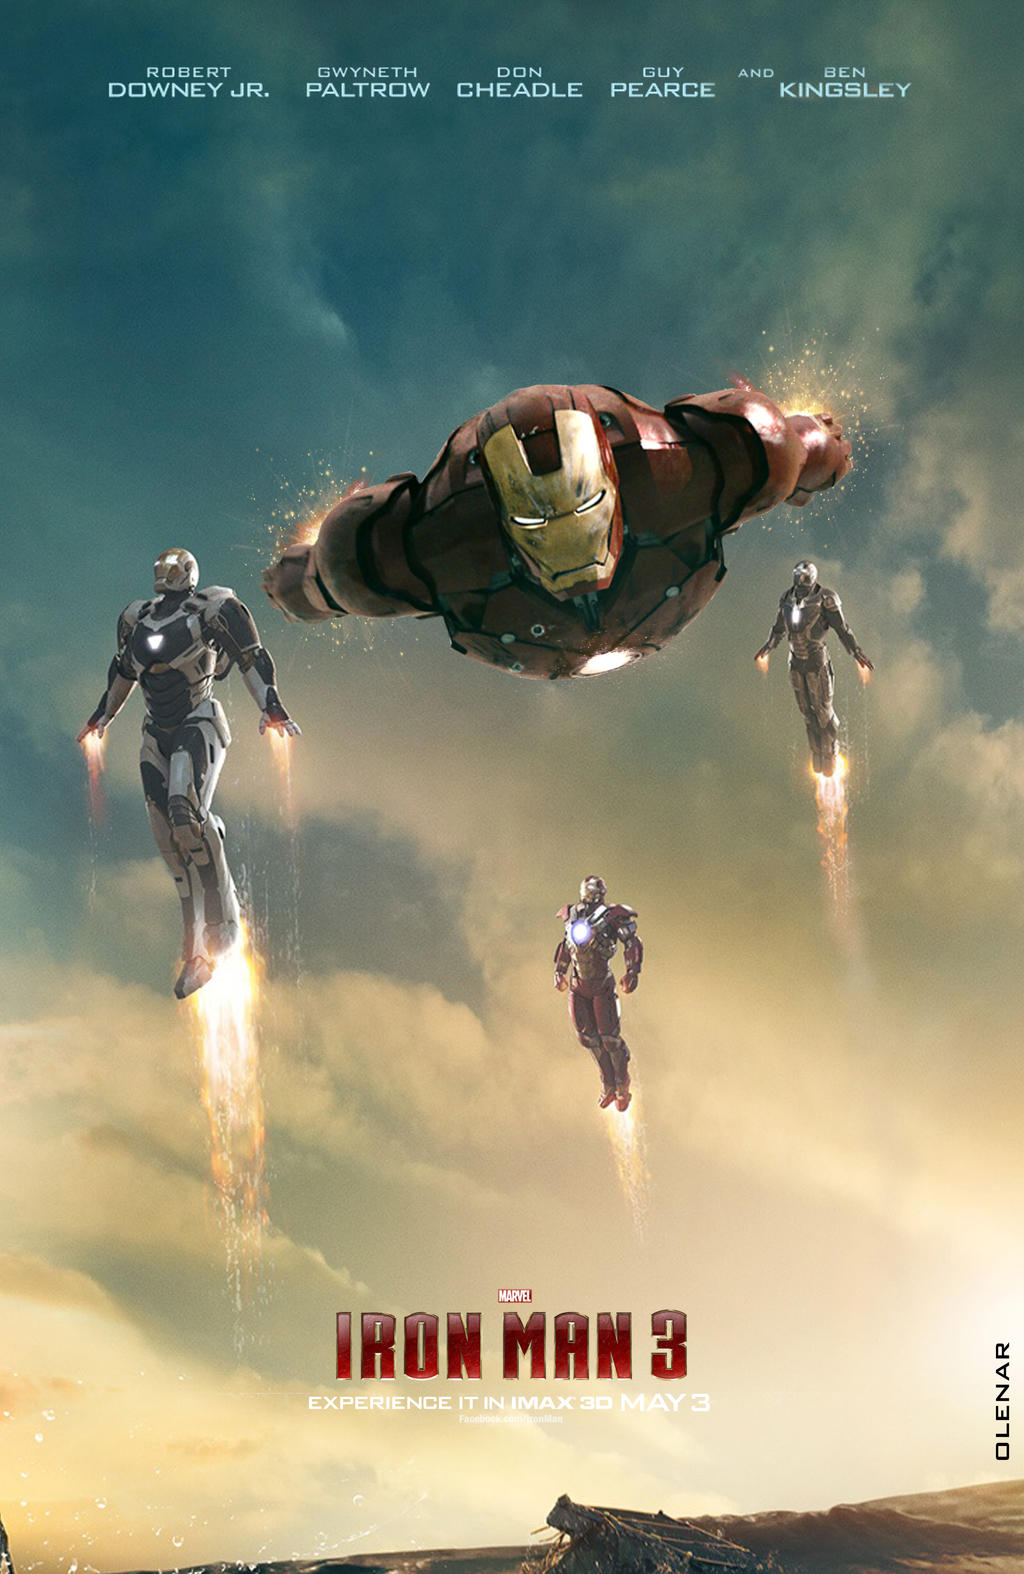 Iron Man 3 Movie Poster by Olenar on DeviantArt